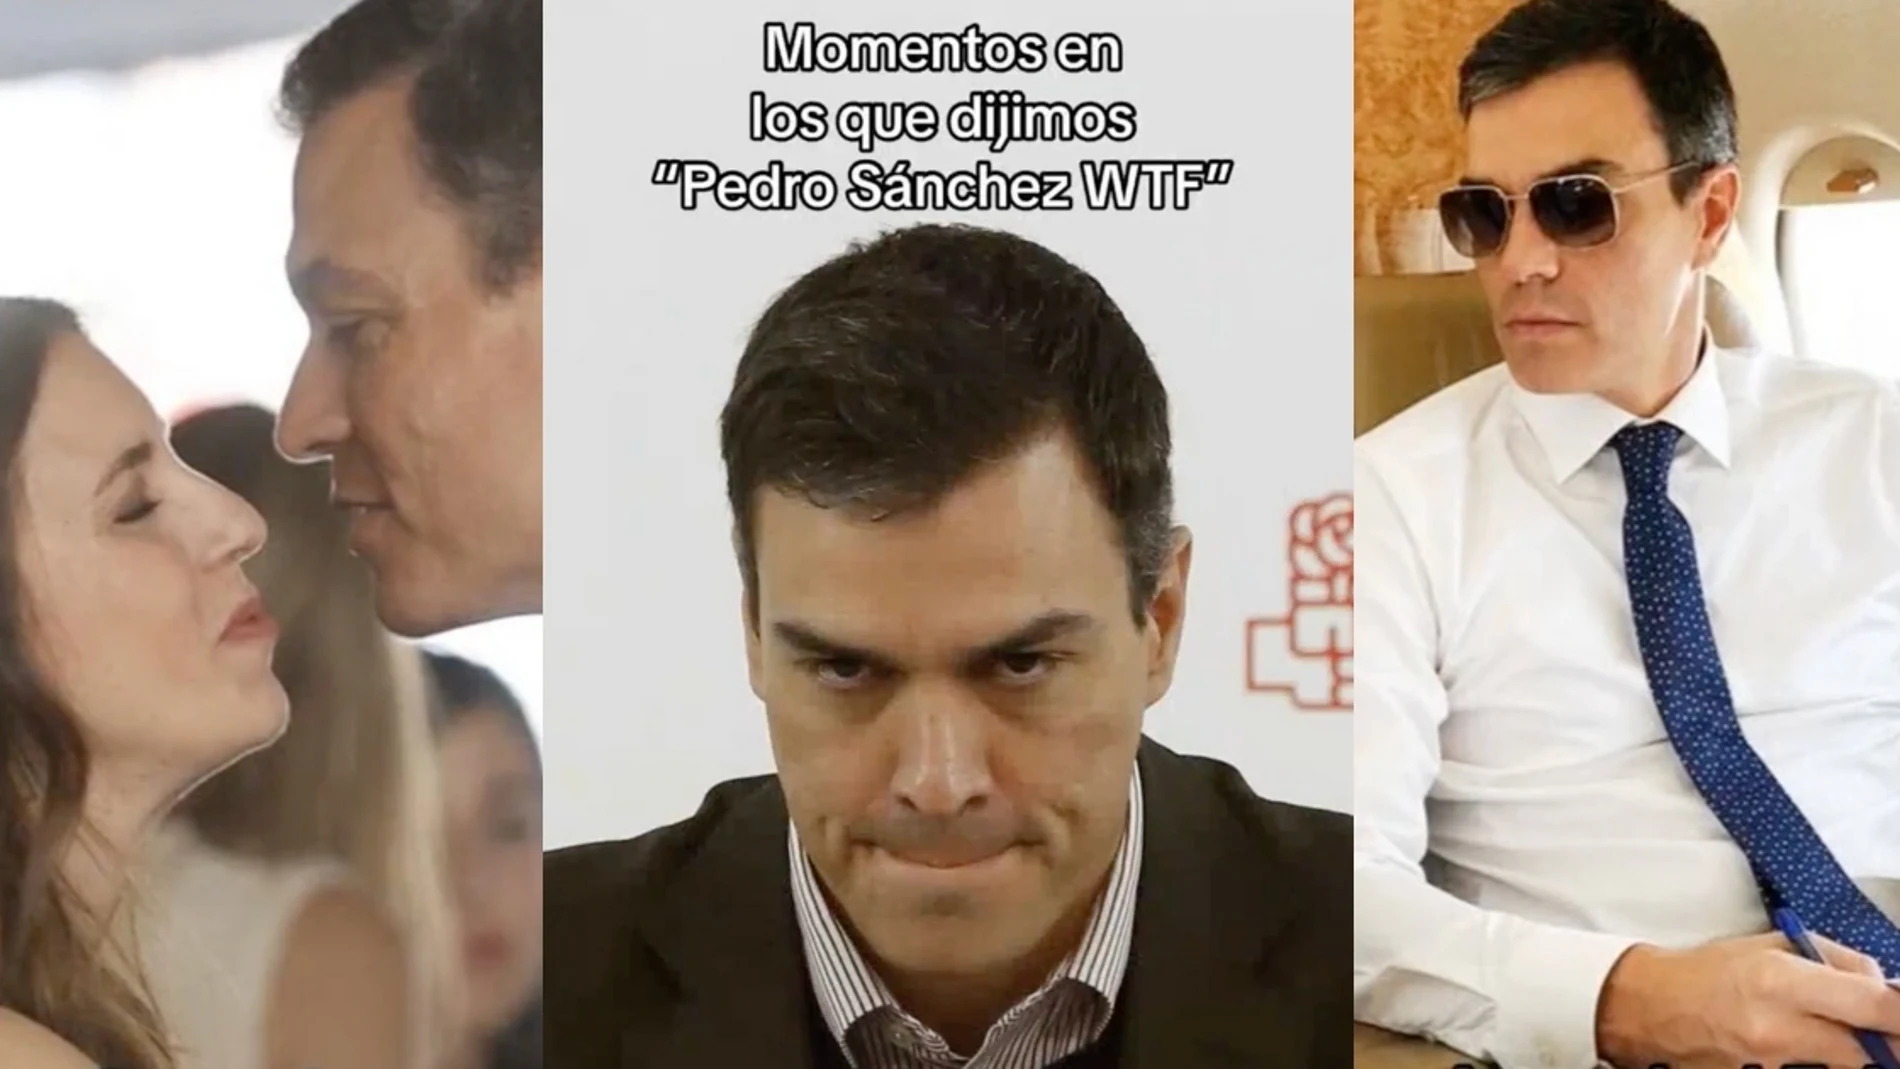 Momentos en los que dijimos "Pedro Sánchez WTF"